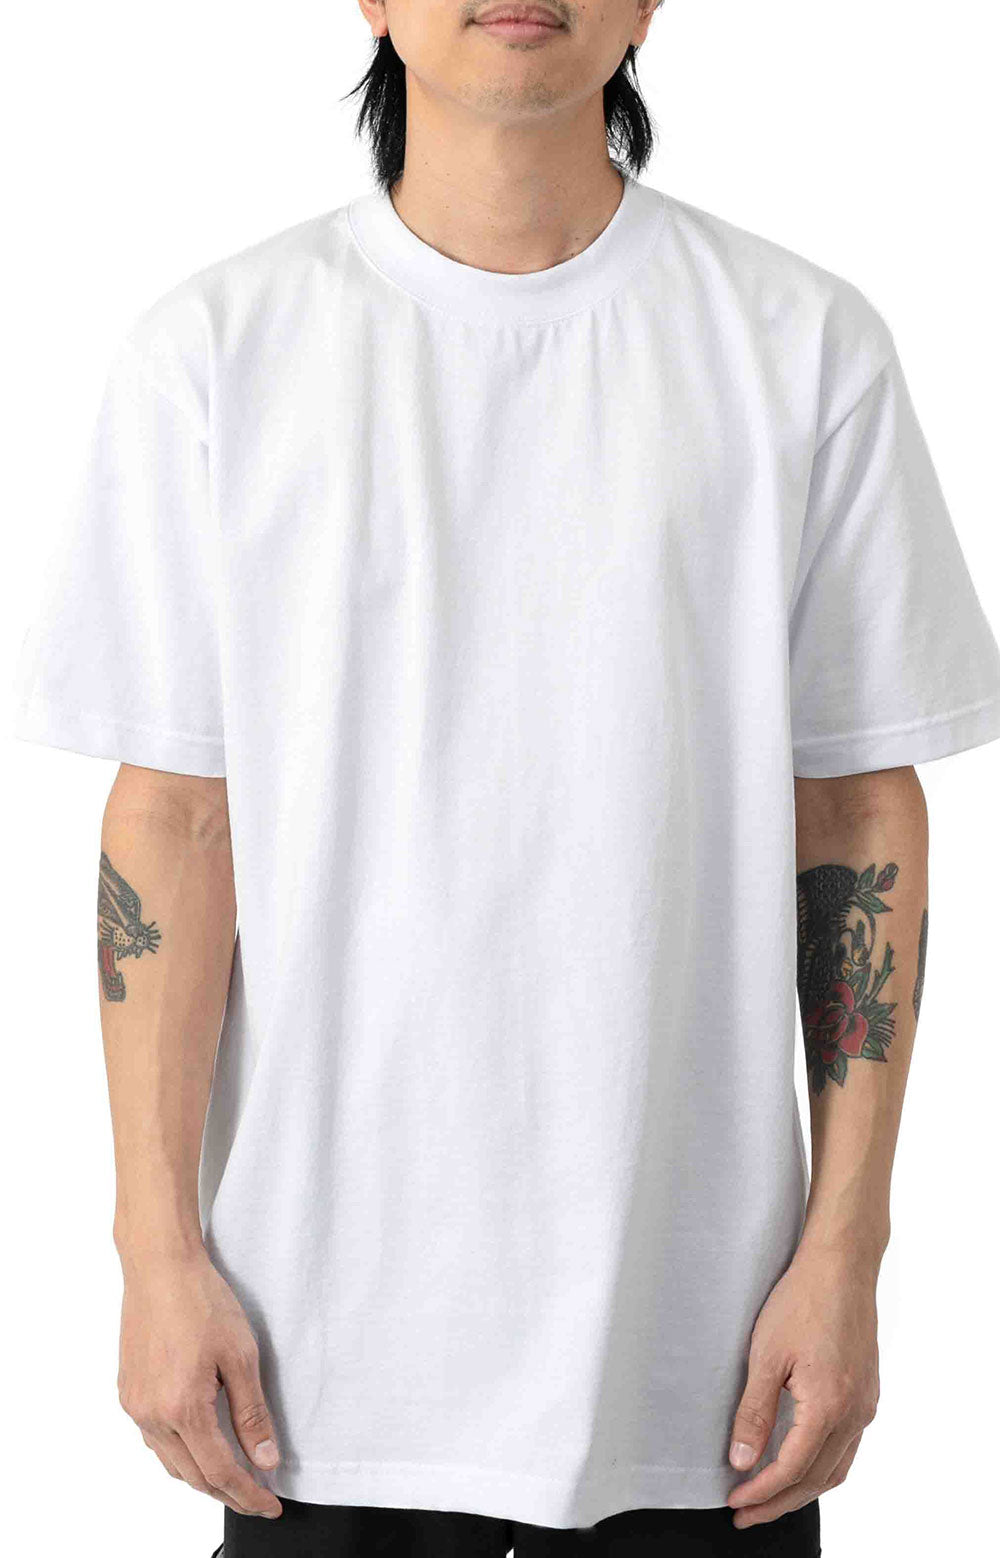 Max Heavyweight S/S T-Shirt - White